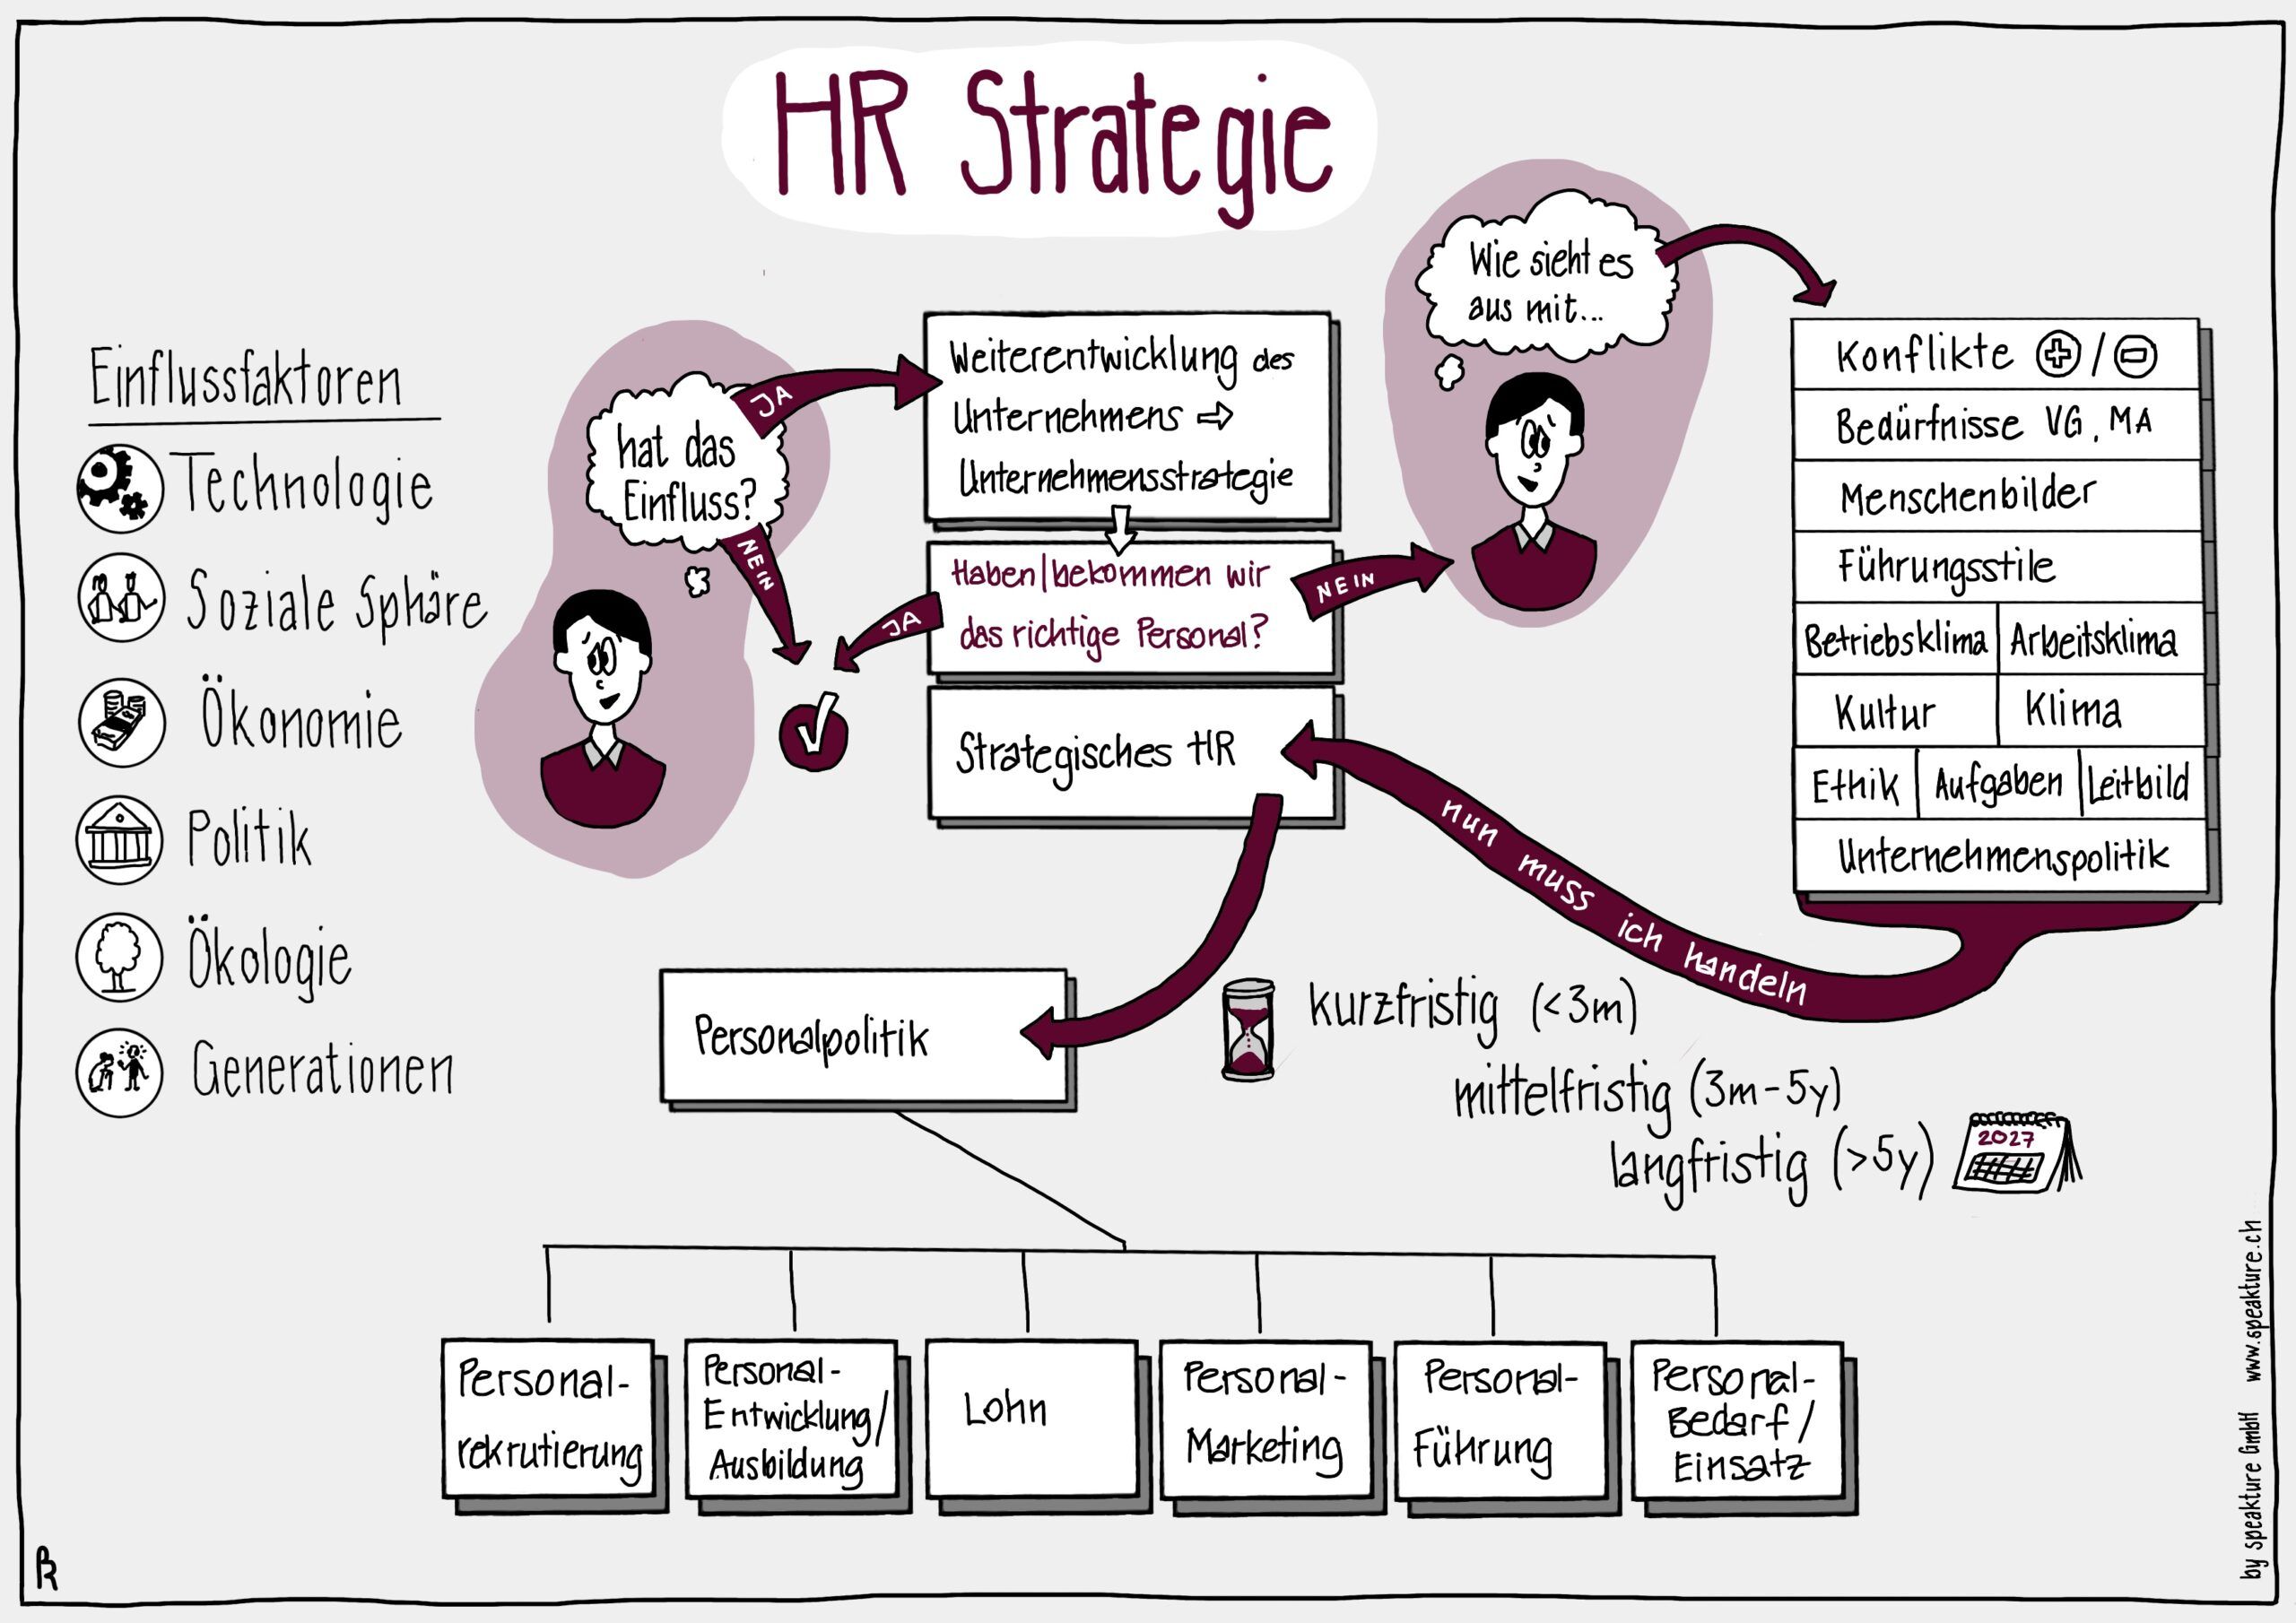 Infographic Business Visual von speakture zu HR Strategie und HR Prozessen